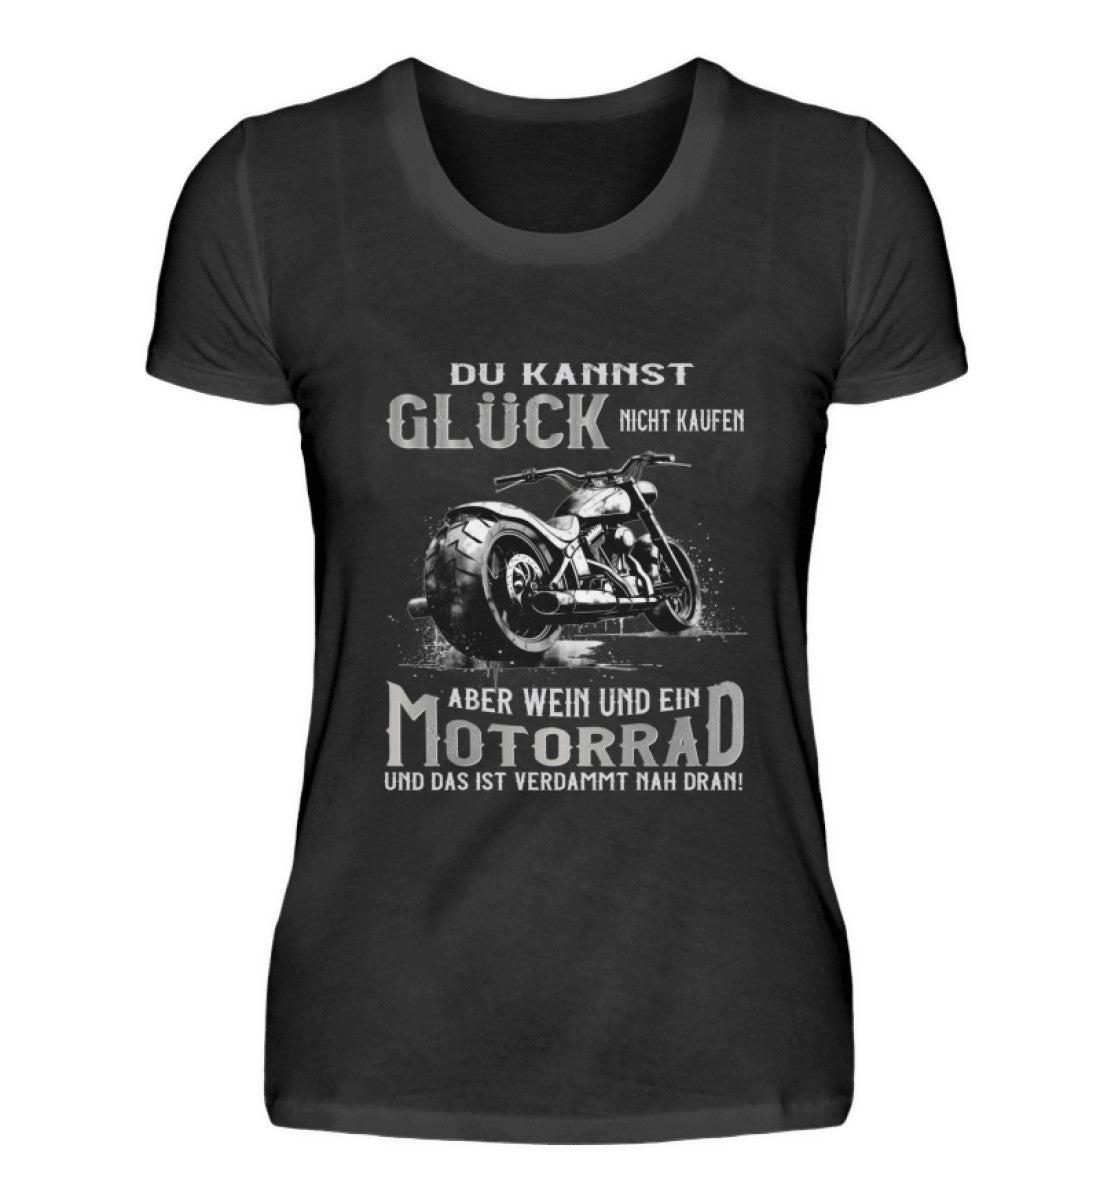 Ein Bikerin T-Shirt für Motorradfahrerinnen von Wingbikers mit dem Aufdruck, Du kannst Glück nicht kaufen, aber Wein und ein Motorrad und das ist verdammt nah dran! - in schwarz.